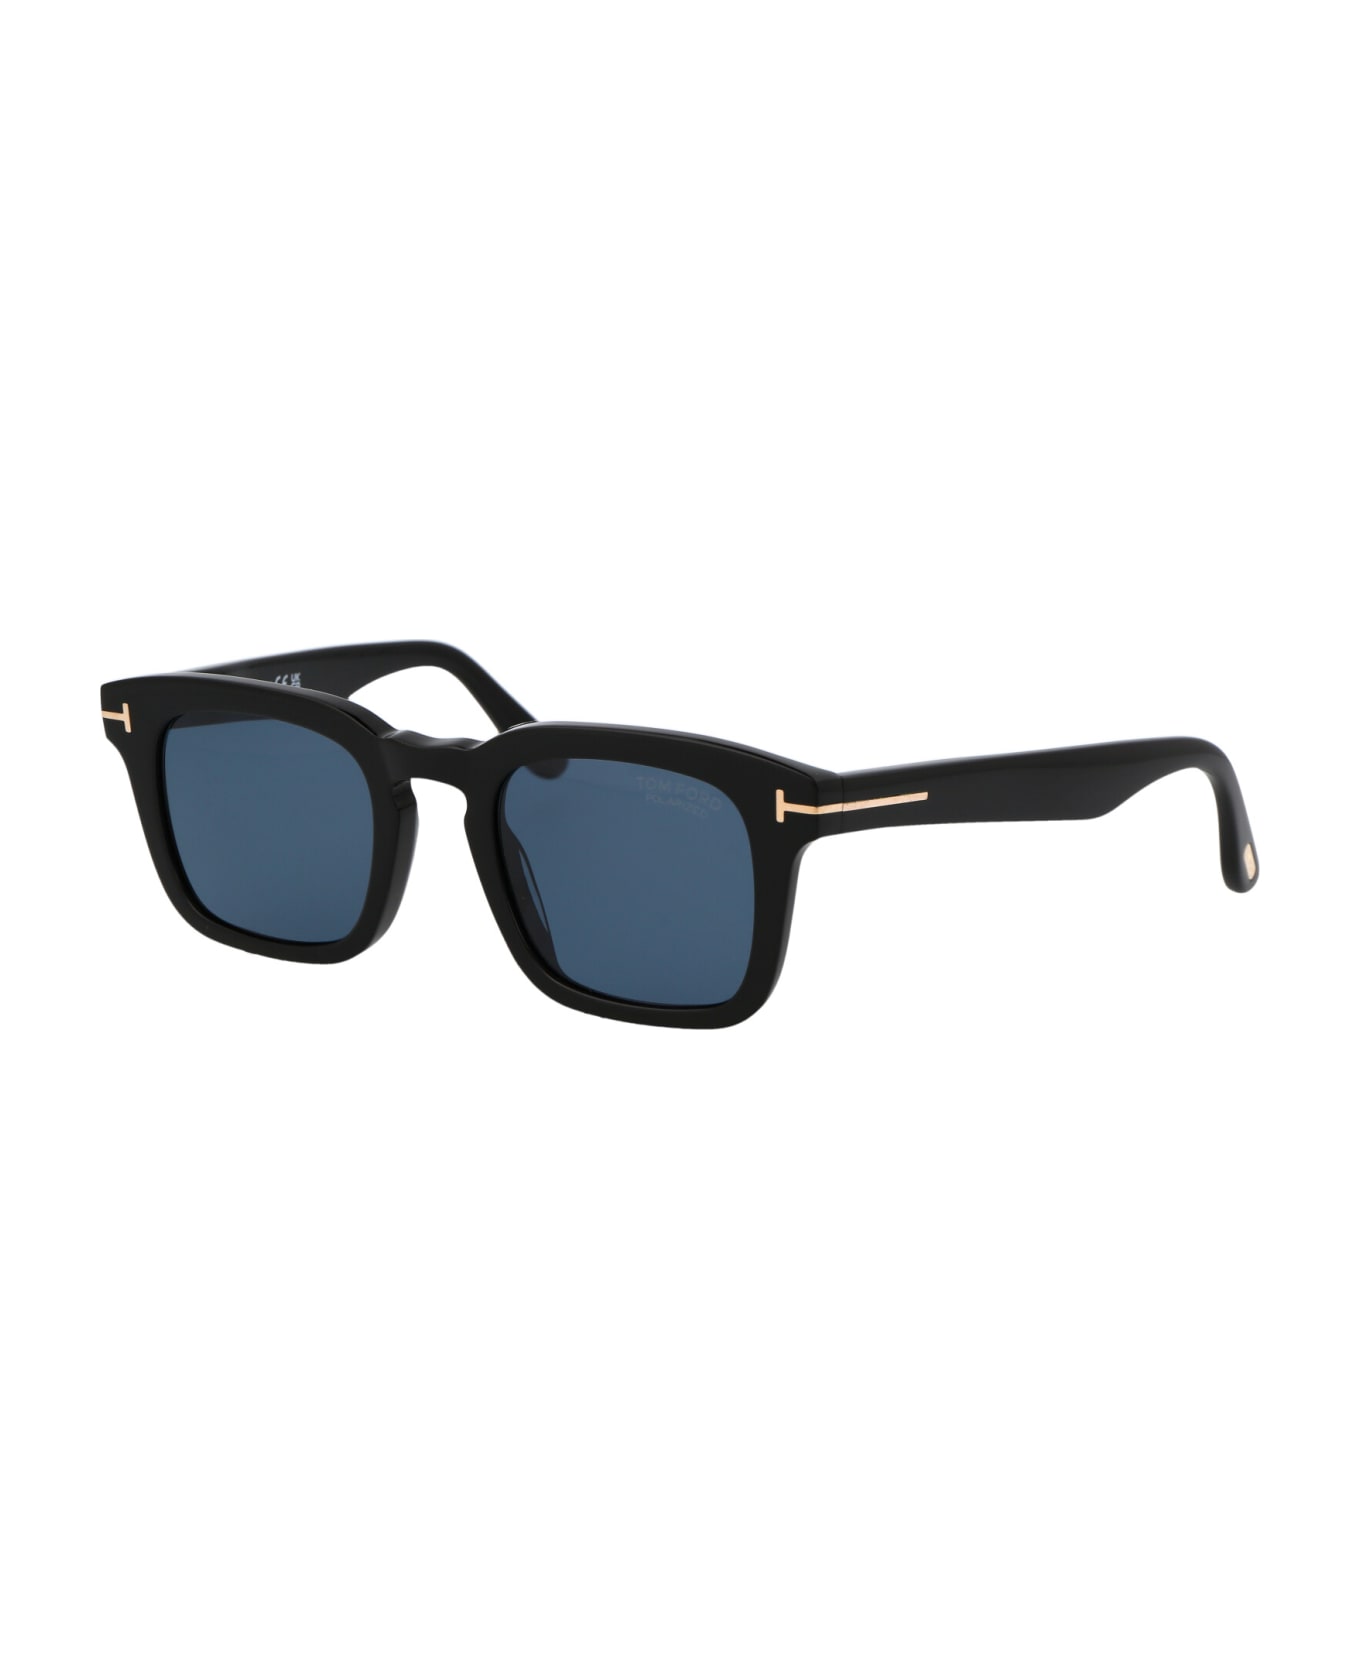 Tom Ford Eyewear Dax Sunglasses - 01V Nero Lucido / Blu